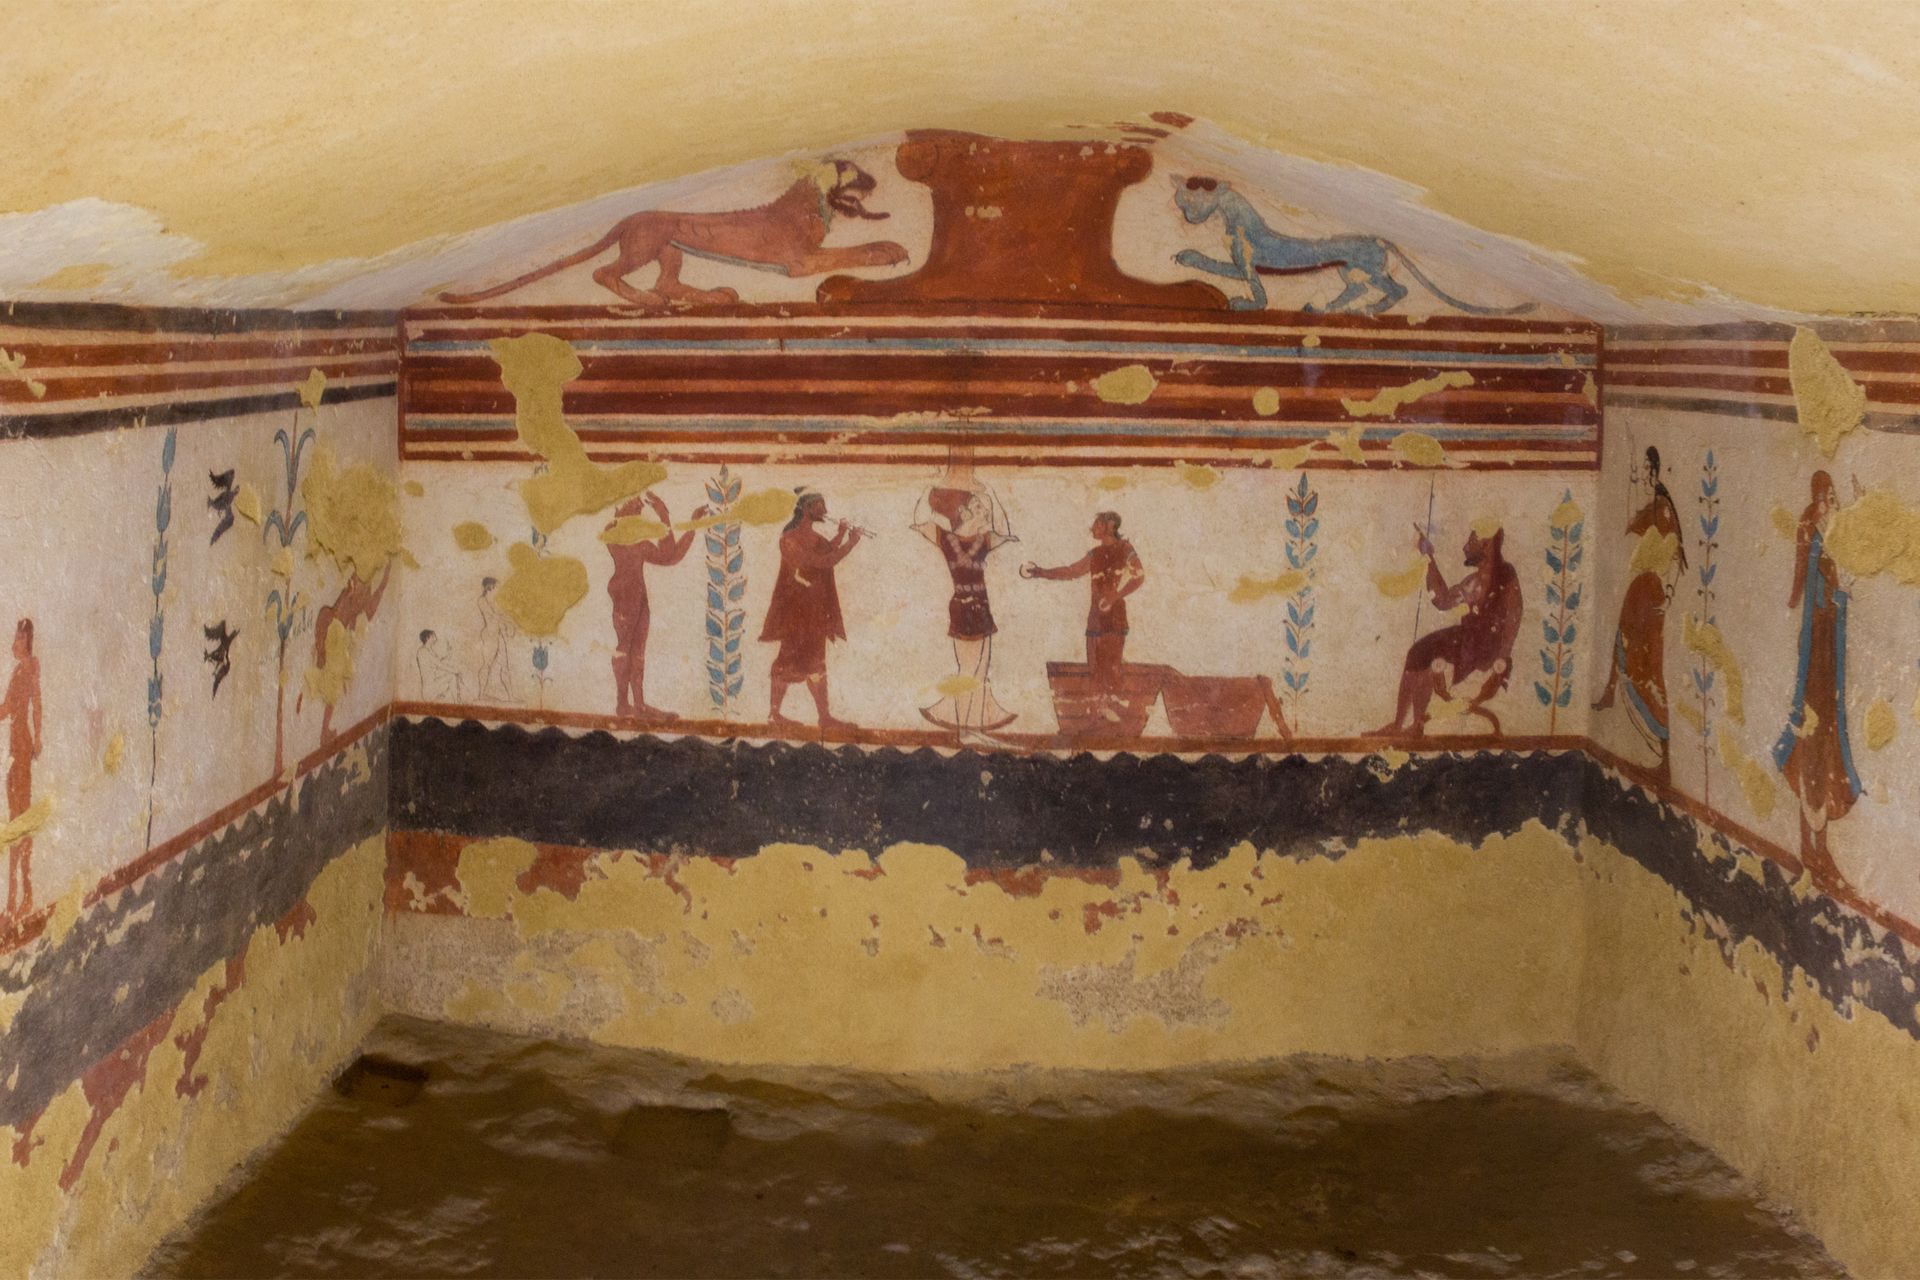 Nécropole de Tarquinia, Latium - Italie